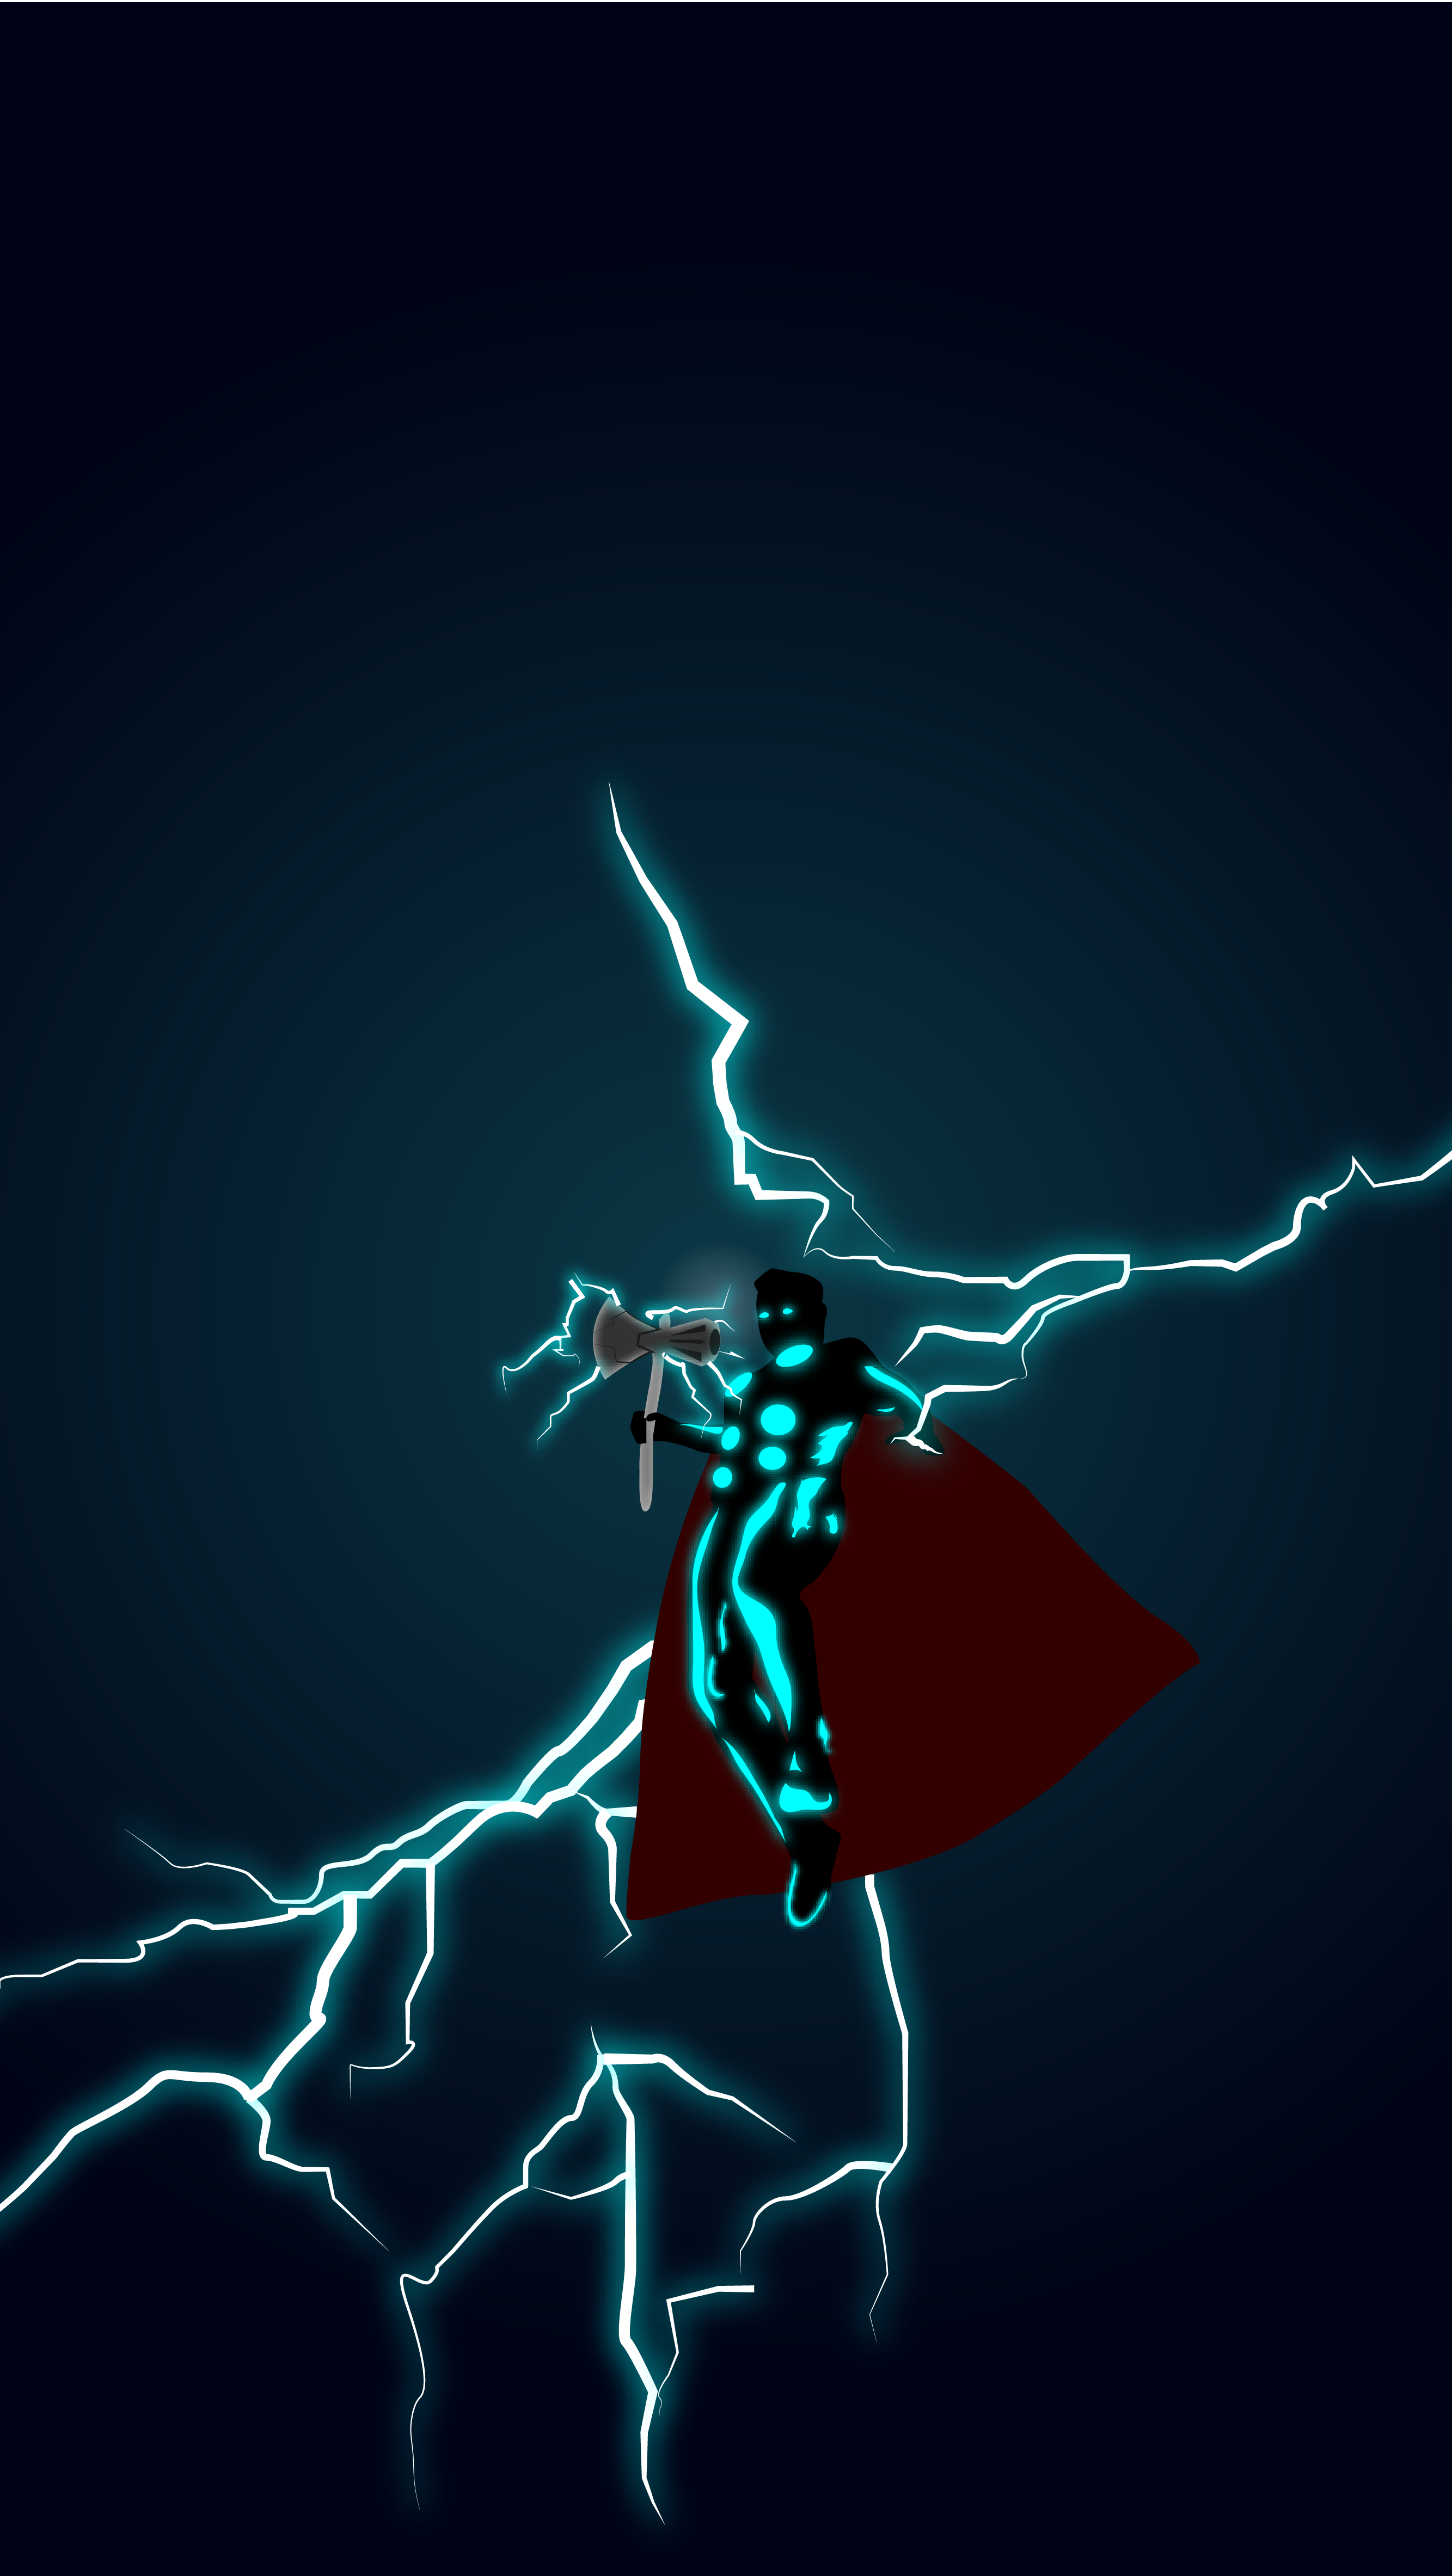 Thor stormbreaker. Thor wallpaper, Marvel comics wallpaper, Marvel background